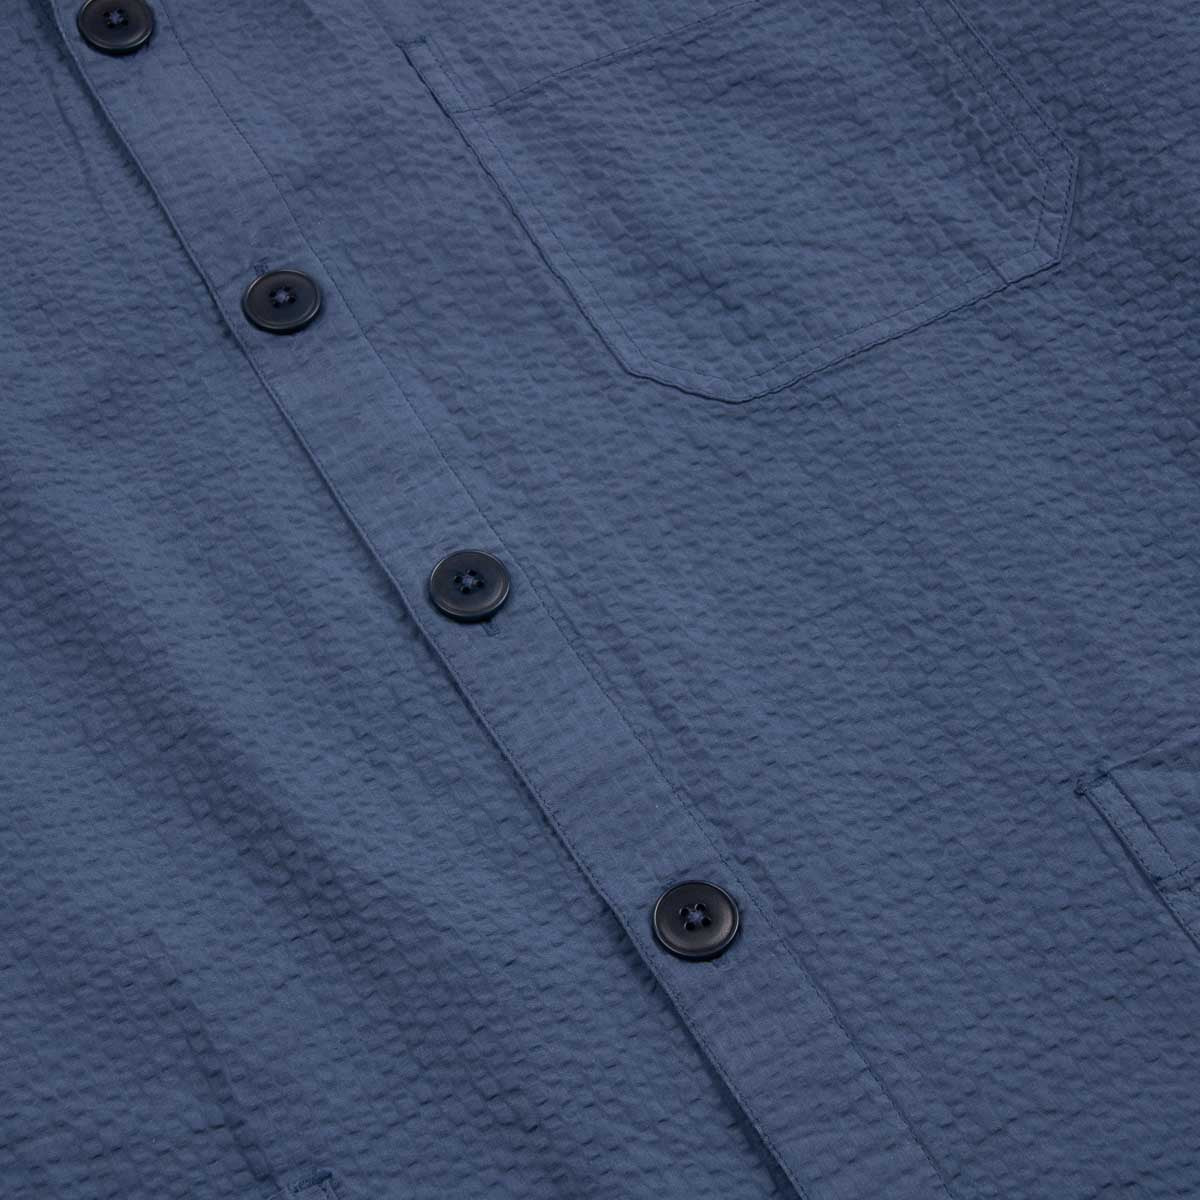 Coban Seersucker Overshirt - Blue